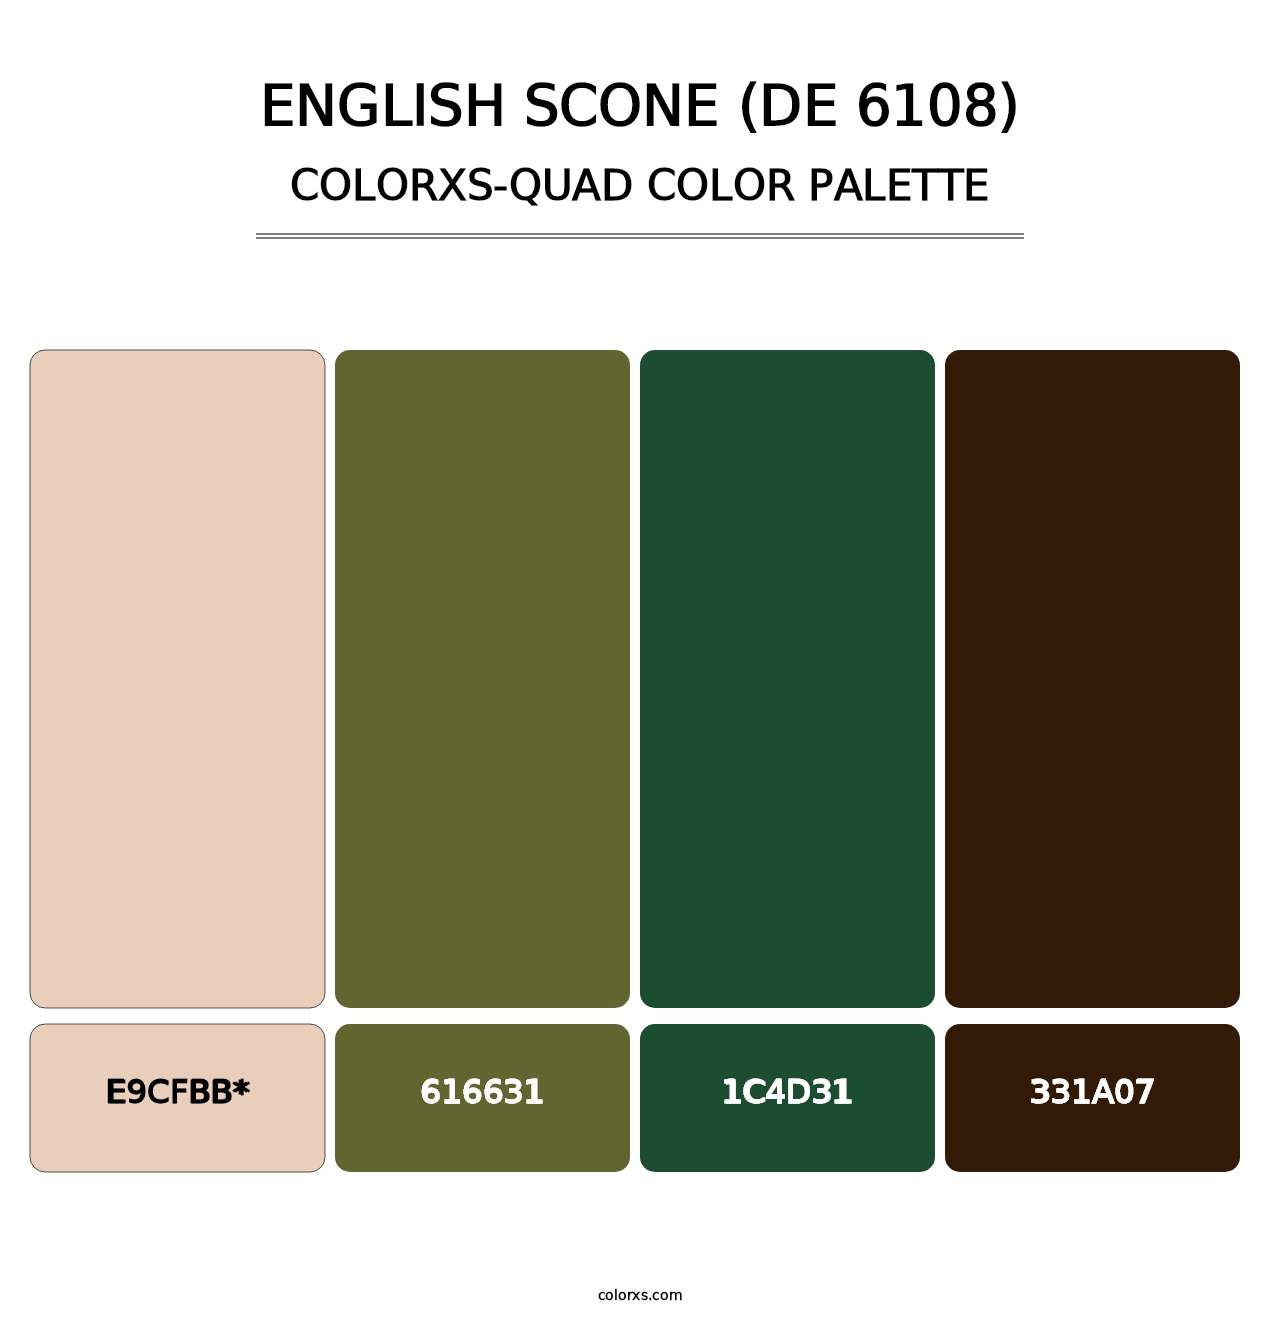 English Scone (DE 6108) - Colorxs Quad Palette